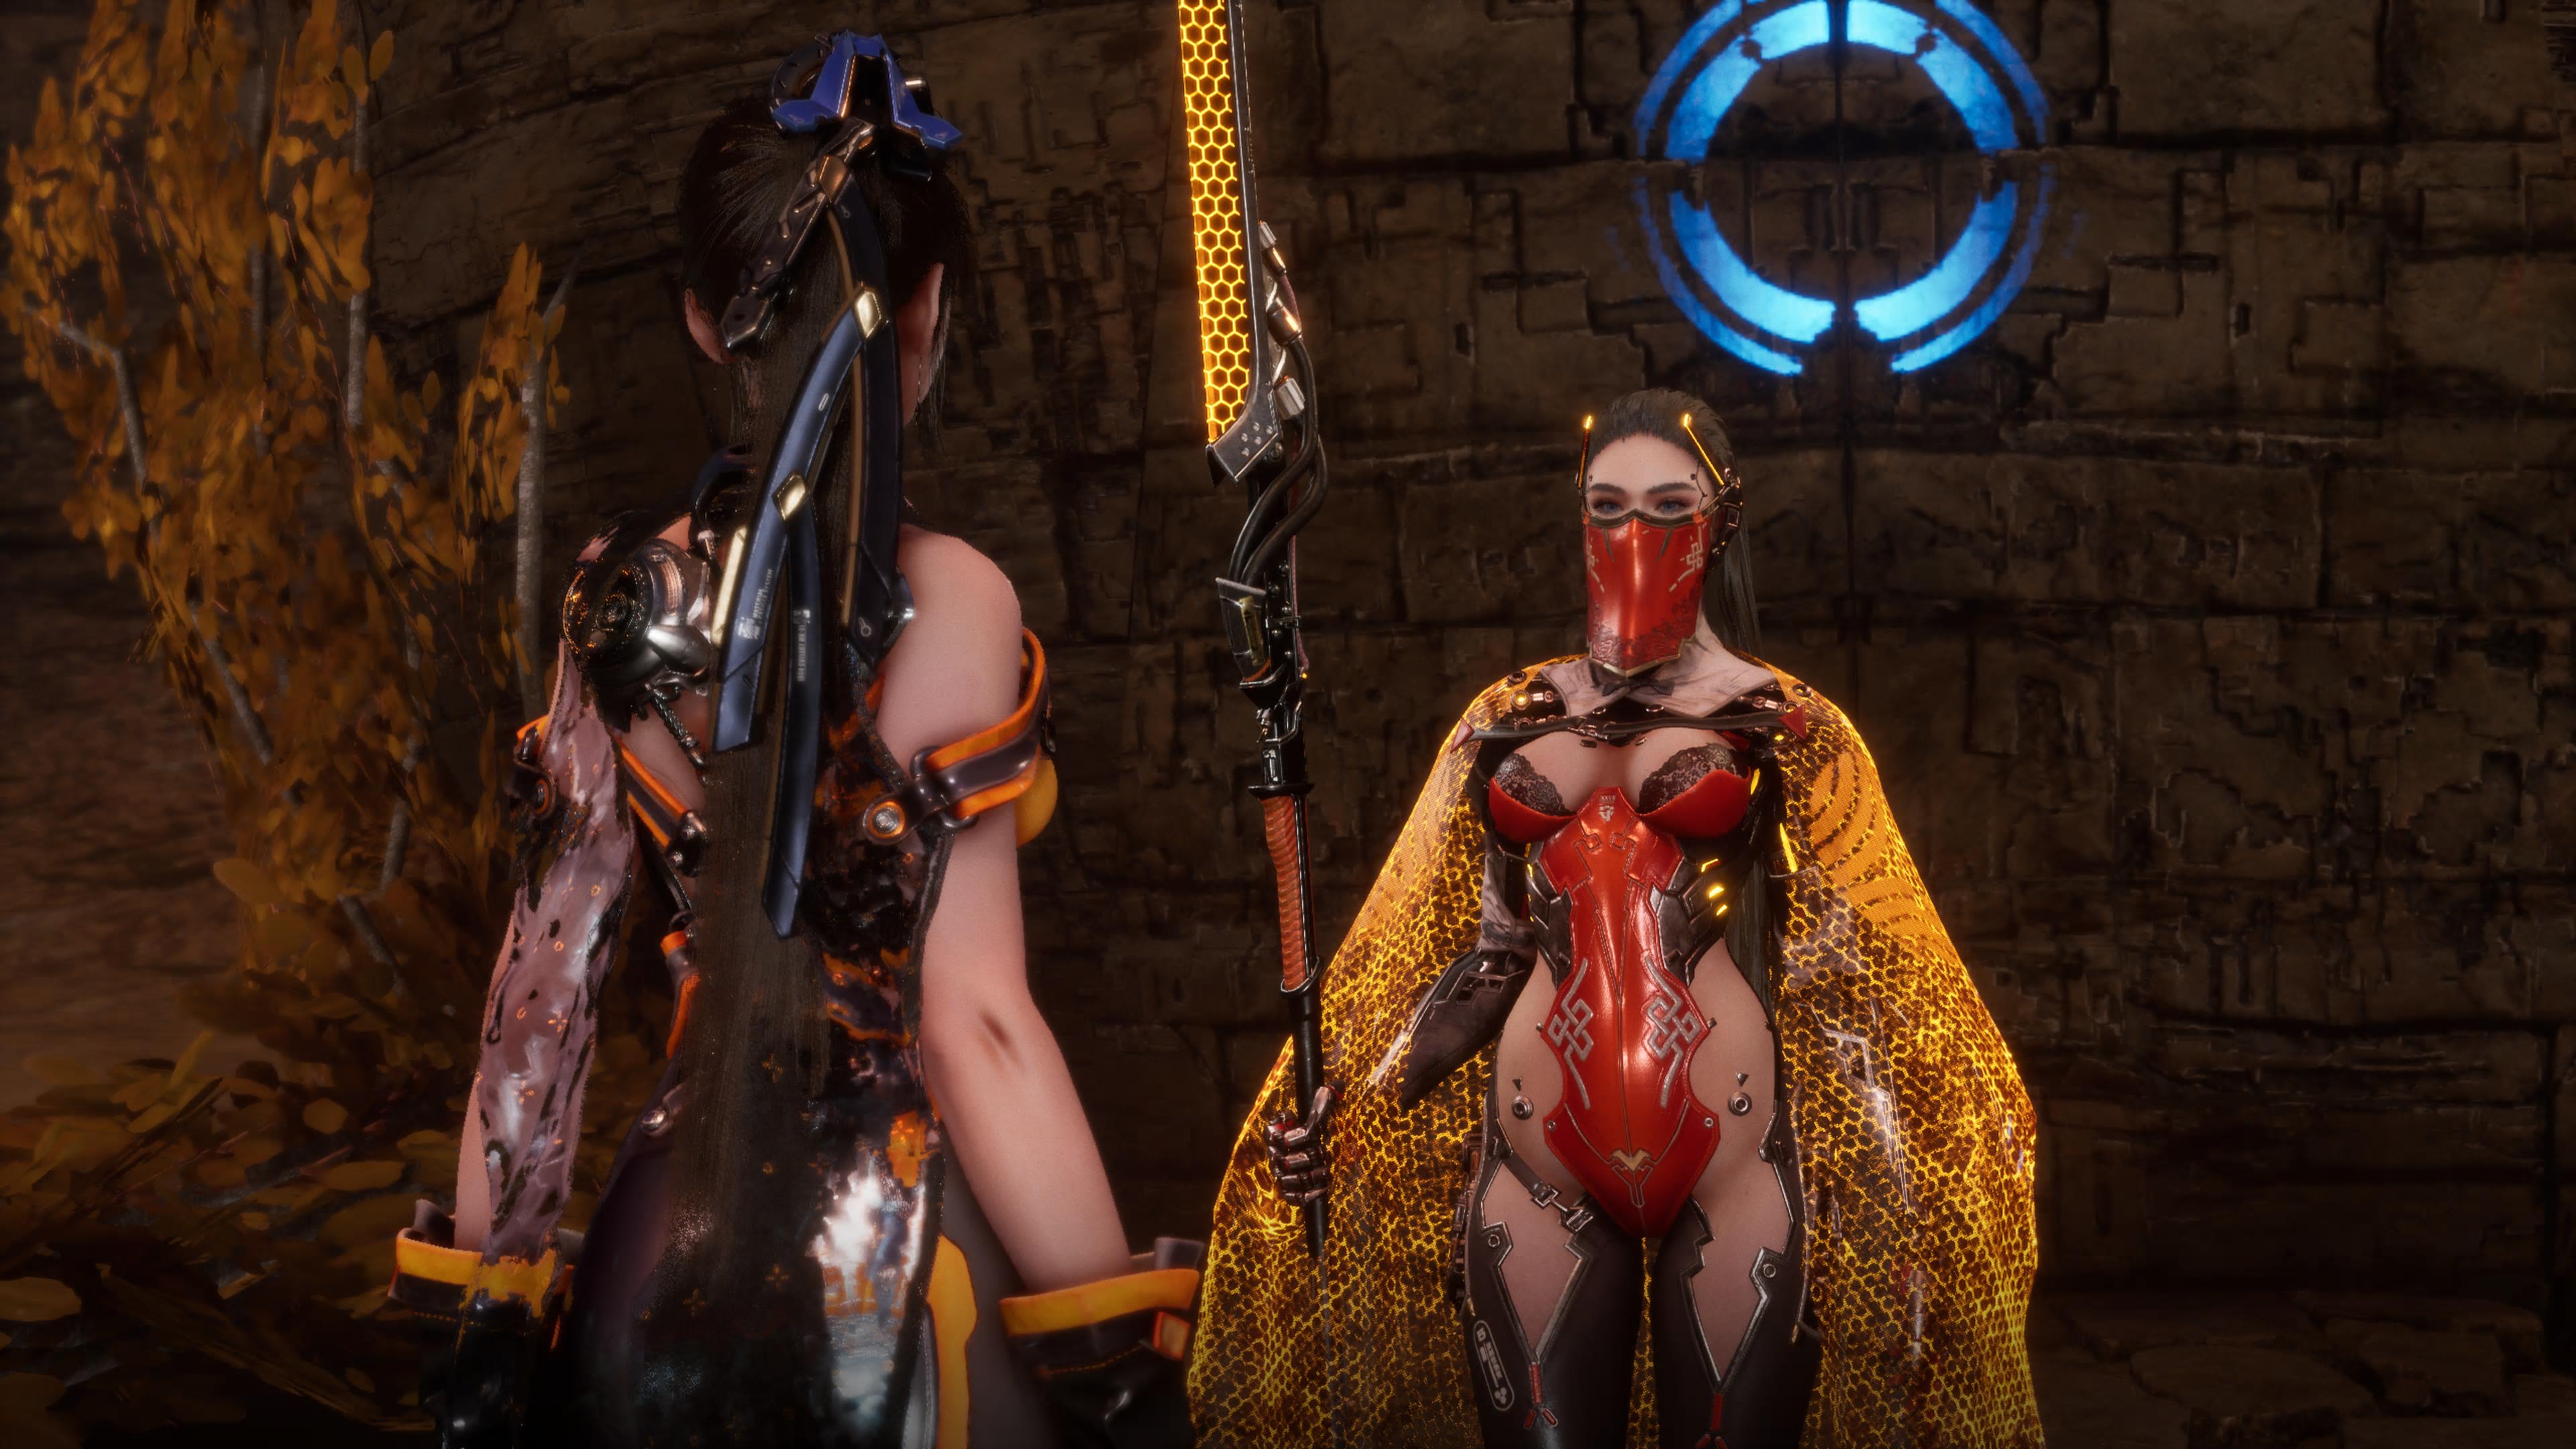 Stellar Blade одевает Еву в невероятно глупые сексуальные наряды, которые портят сюжет игры, но, несмотря на вынужденную сексуальную привлекательность, мне действительно нравится ее детальный дизайн.